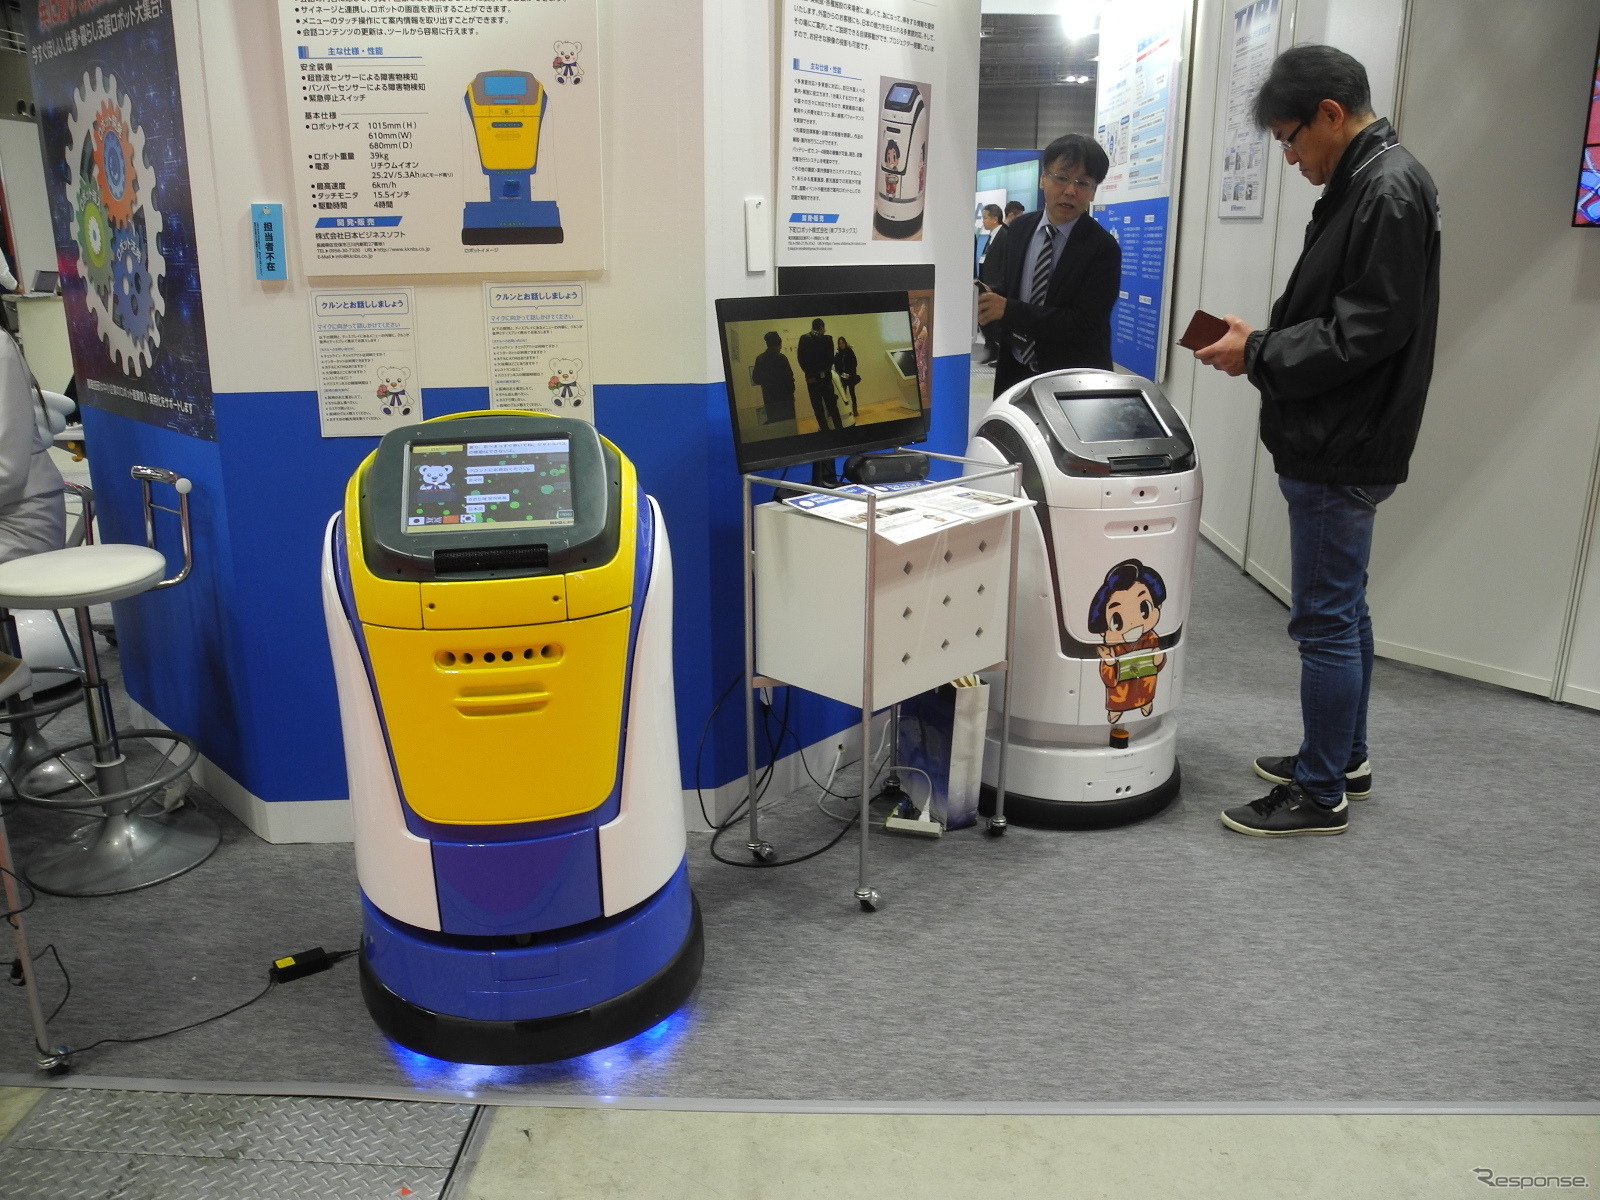 ホテル用多言語対応自律移動型案内ロボット（左）とおもてなしエンタメ案内ロボット「おーい」